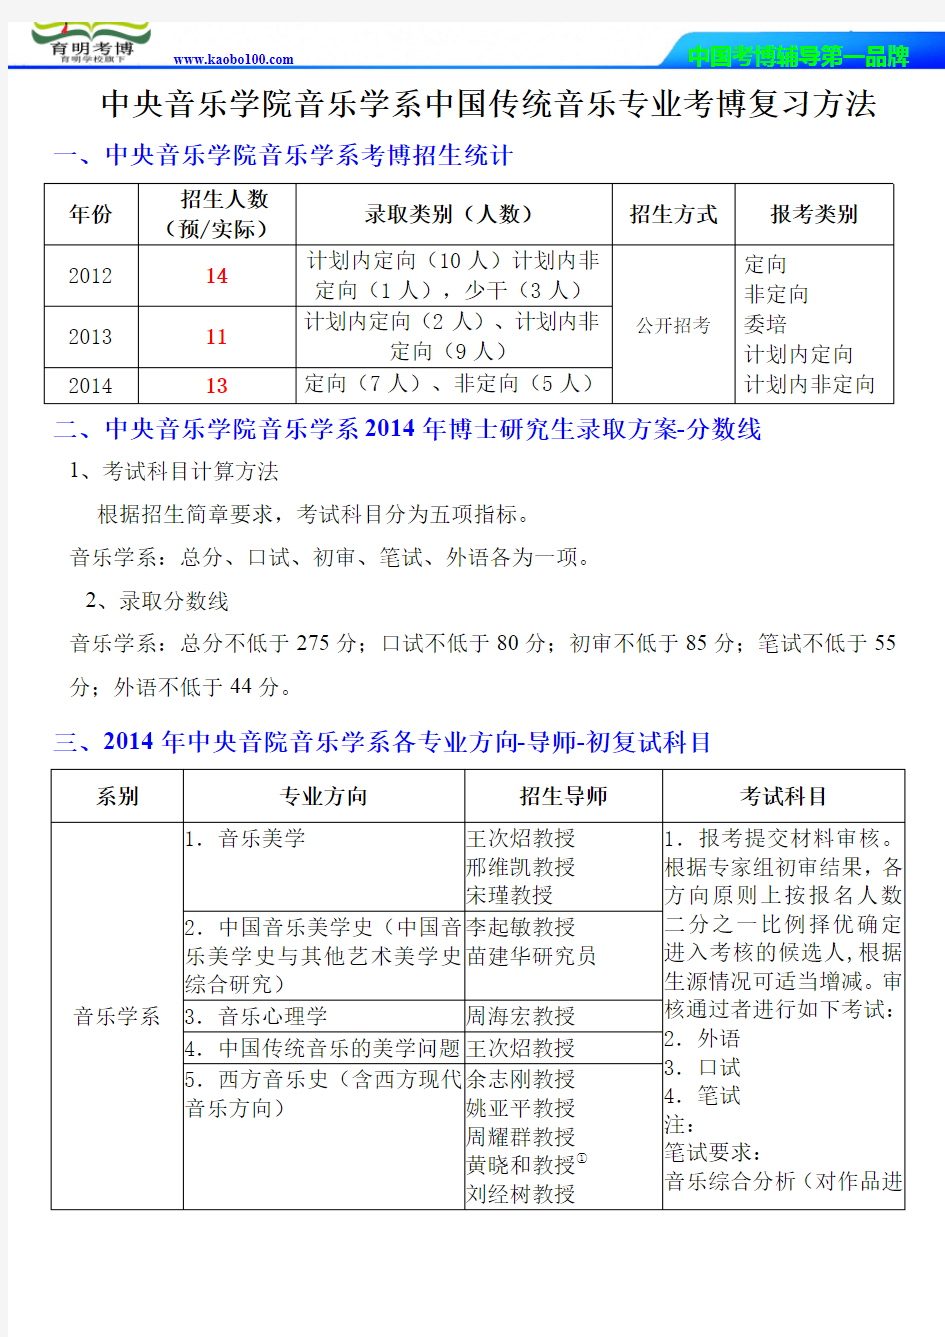 中央音乐学院音乐学系中国传统音乐专业考博考试大纲-分数线-考博辅导-保过-育明考博